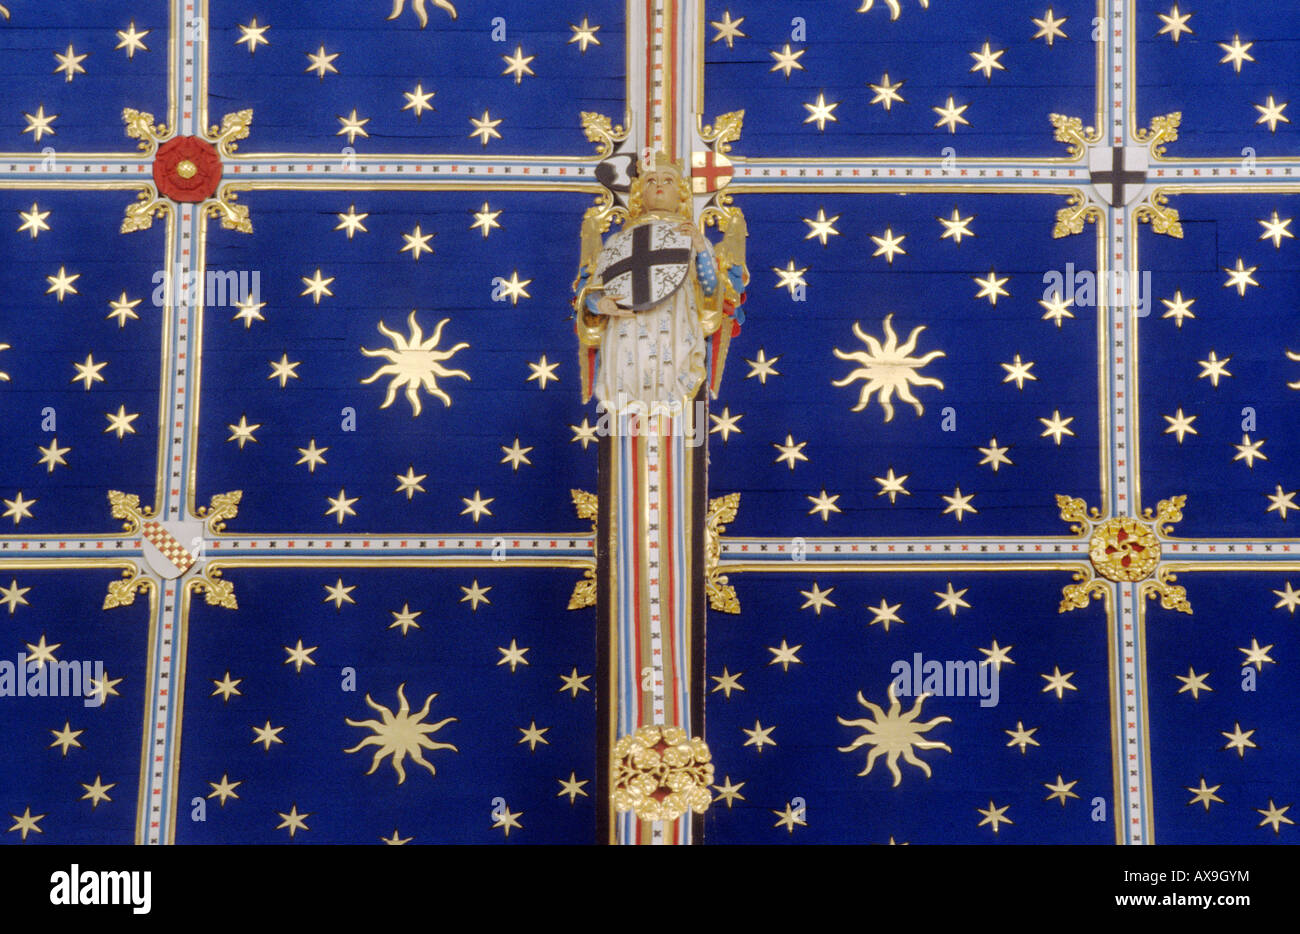 Carlisle Cumbria catedral techos abovedados pintados azules estrellas angel dispositivos heráldica heráldica Medieval arquitectura inglesa Foto de stock